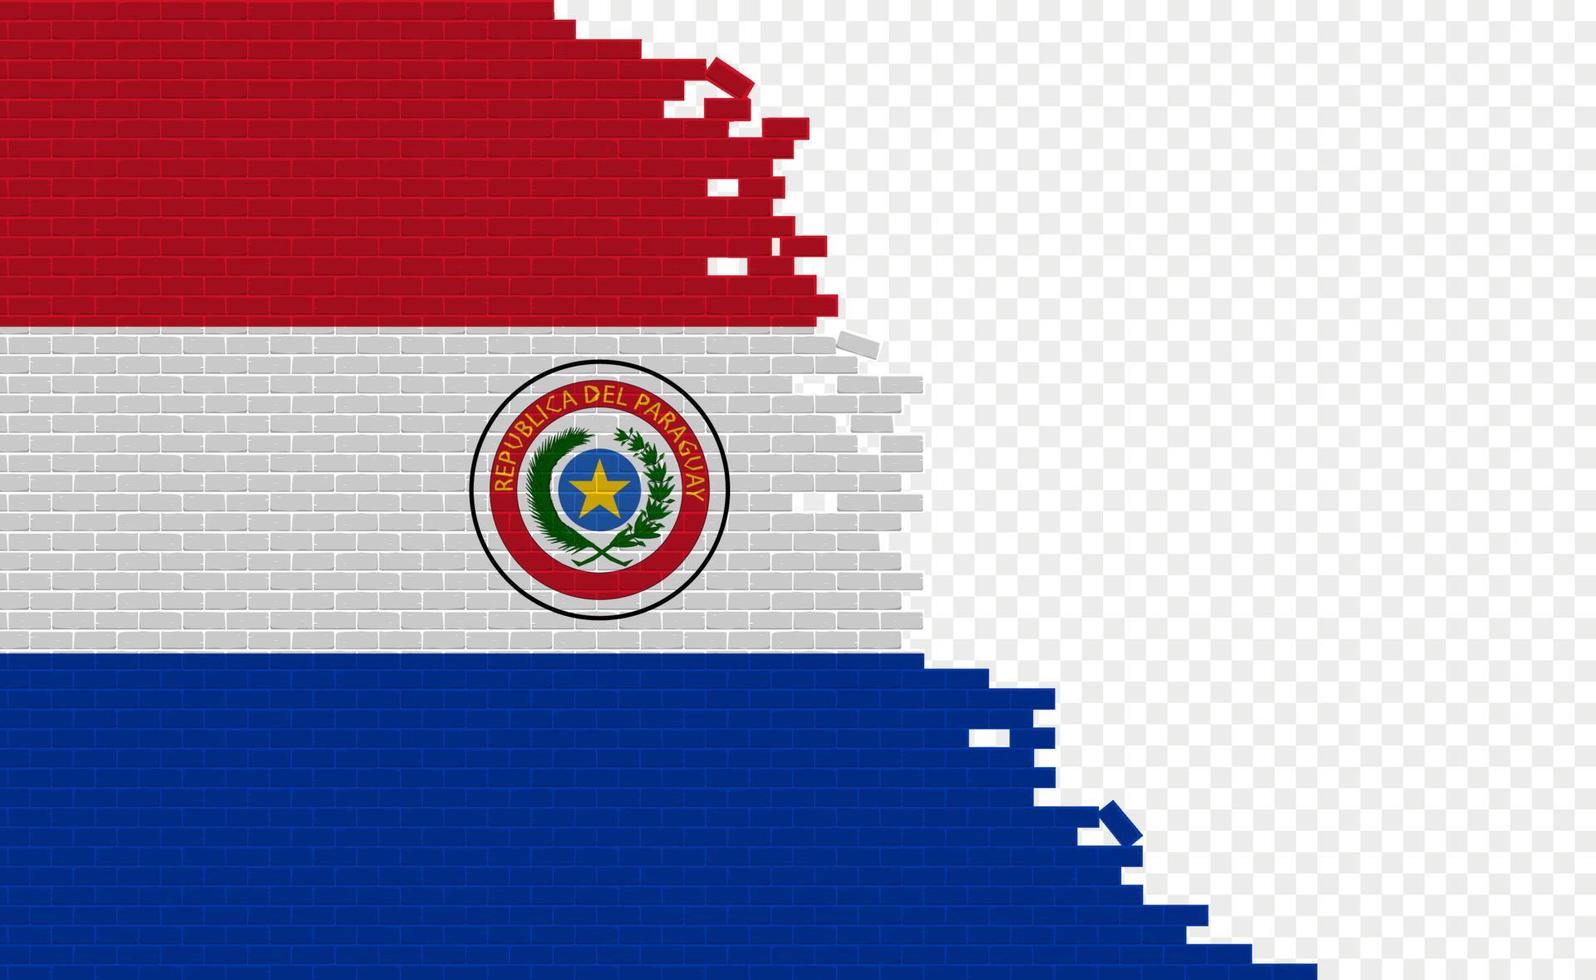 bandera de paraguay en la pared de ladrillos rotos. campo de bandera vacío de otro país. comparación de países. fácil edición y vector en grupos.